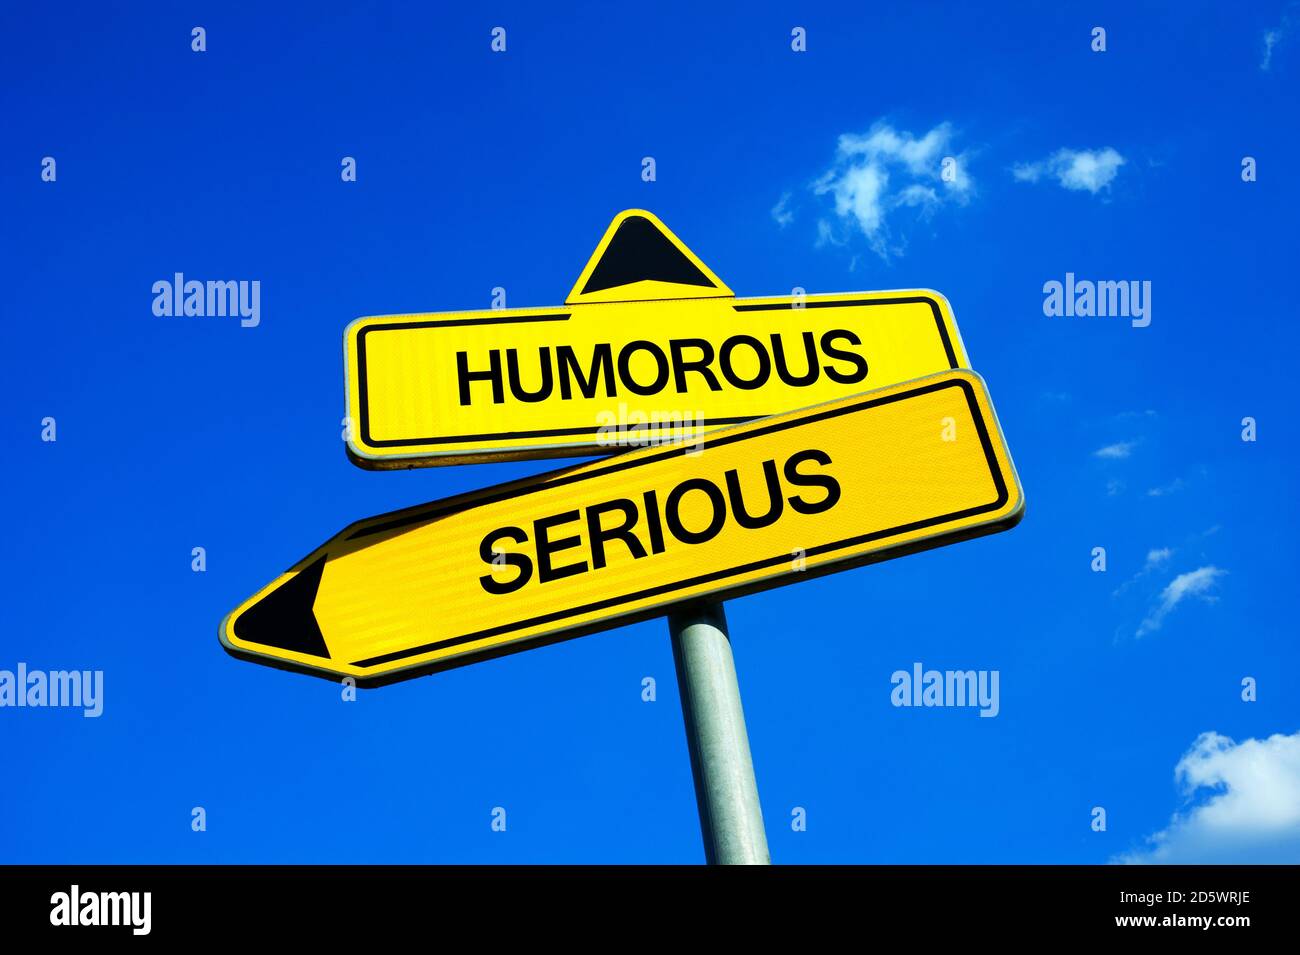 Humor vs serio - señal de tráfico con dos opciones - tener sentido del humor y ser animador vs ser serio y carácter grave. Foto de stock